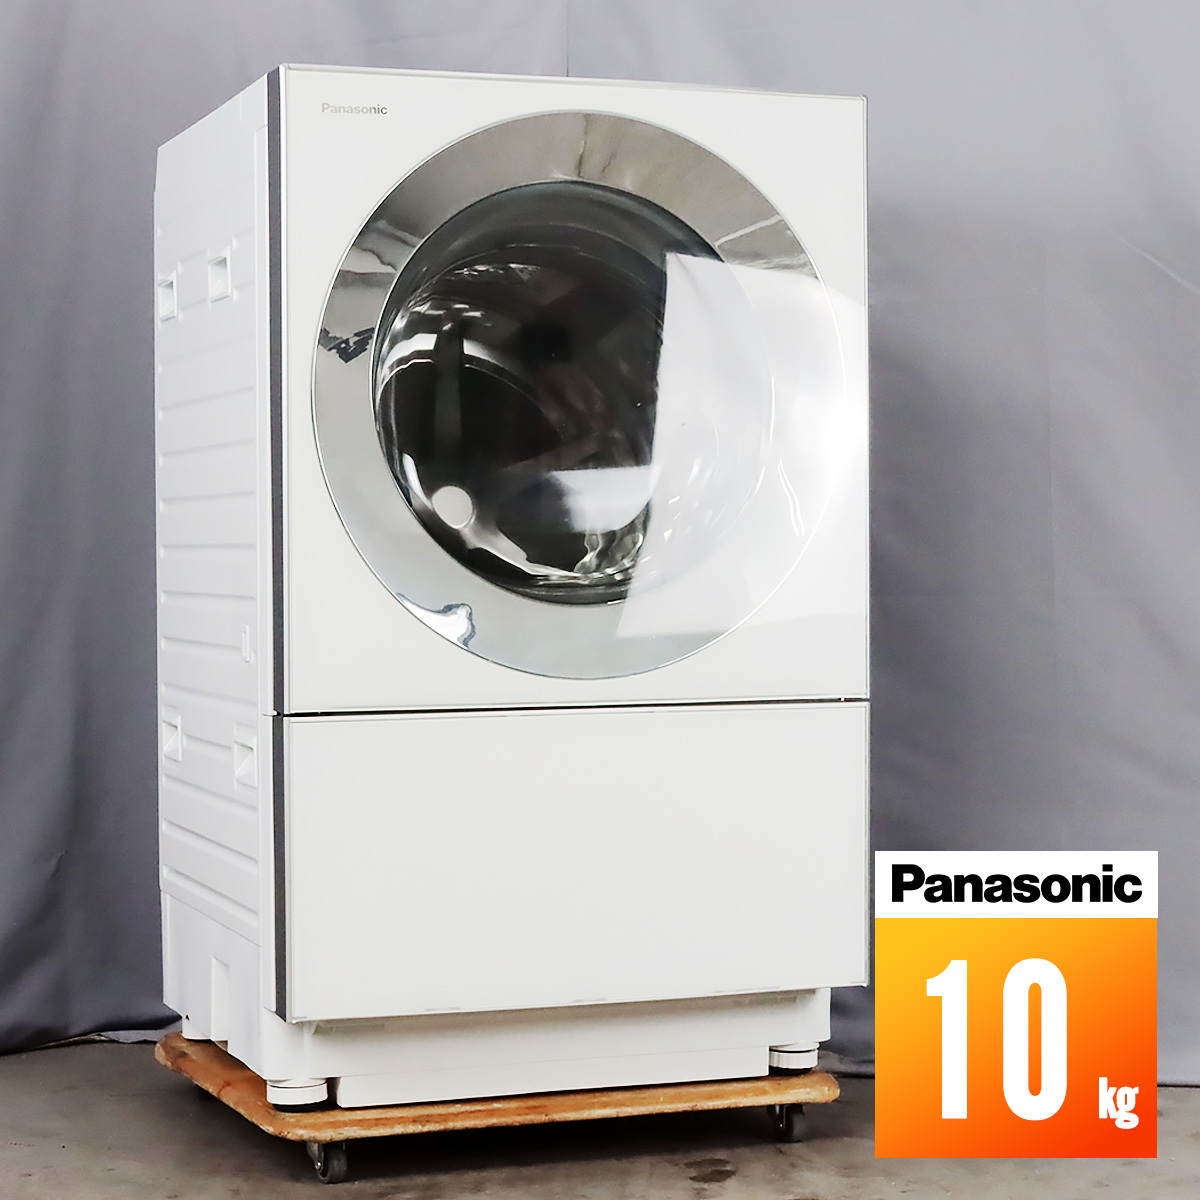 特価商品 Panasonicドラム式洗濯乾燥器 風呂水給水ホース NA-VG2300R